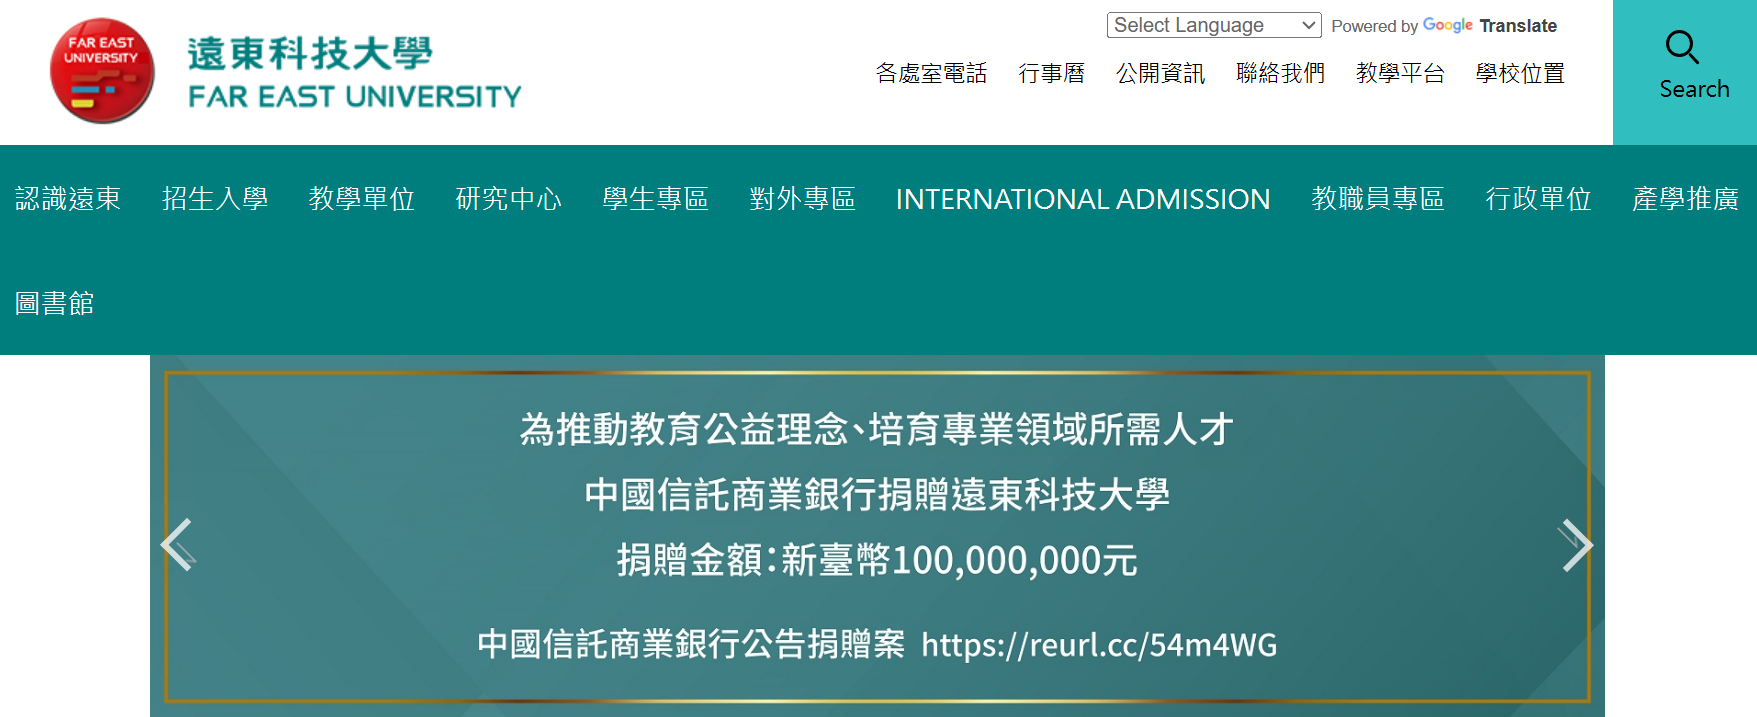 遠東科大獲中國信託銀行捐資1億元將更名為中信科技大學